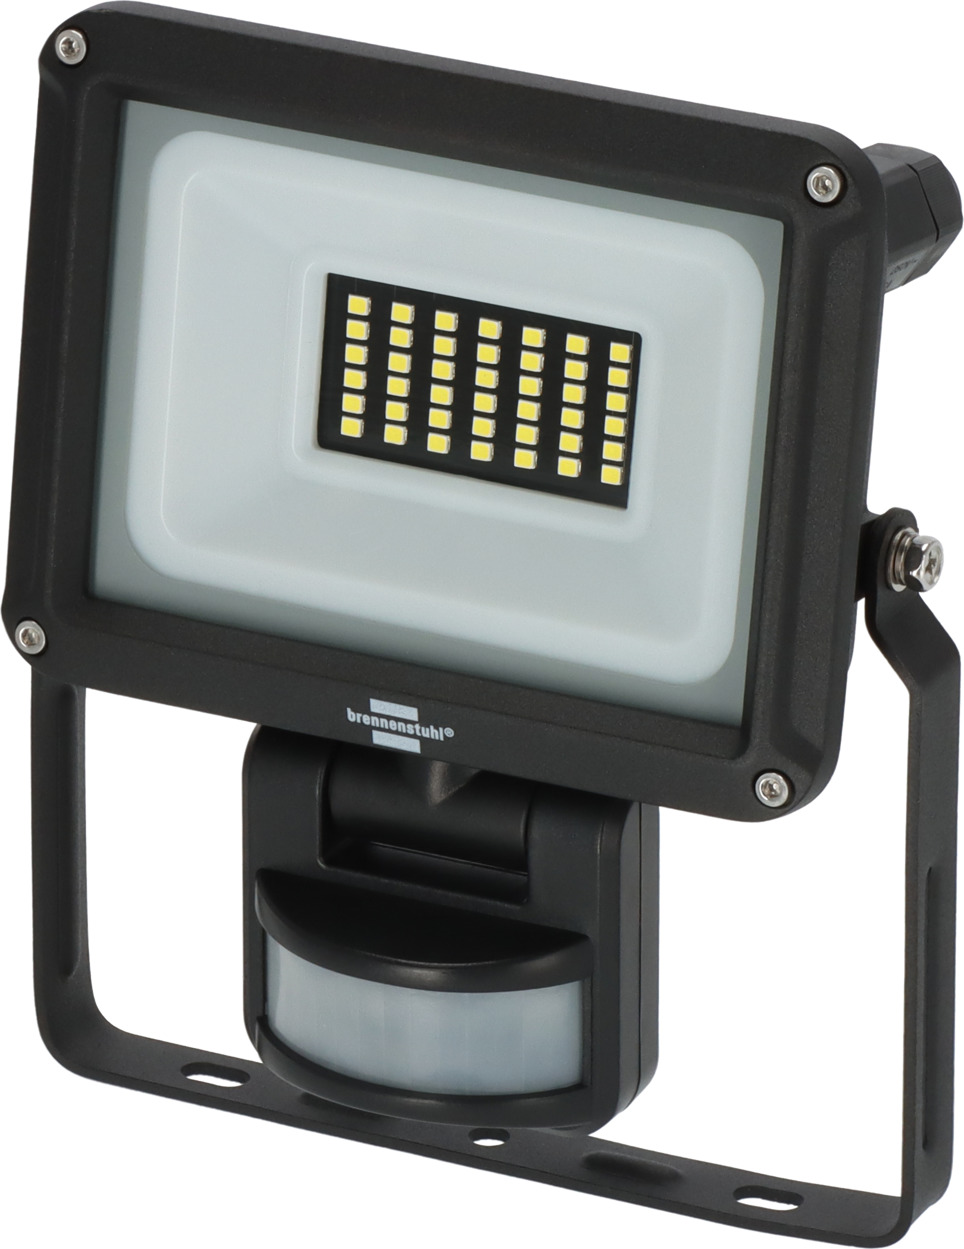 LED Strahler JARO 3060 P mit Infrarot-Bewegungsmelder, 2300lm, 20W, IP65 |  brennenstuhl®